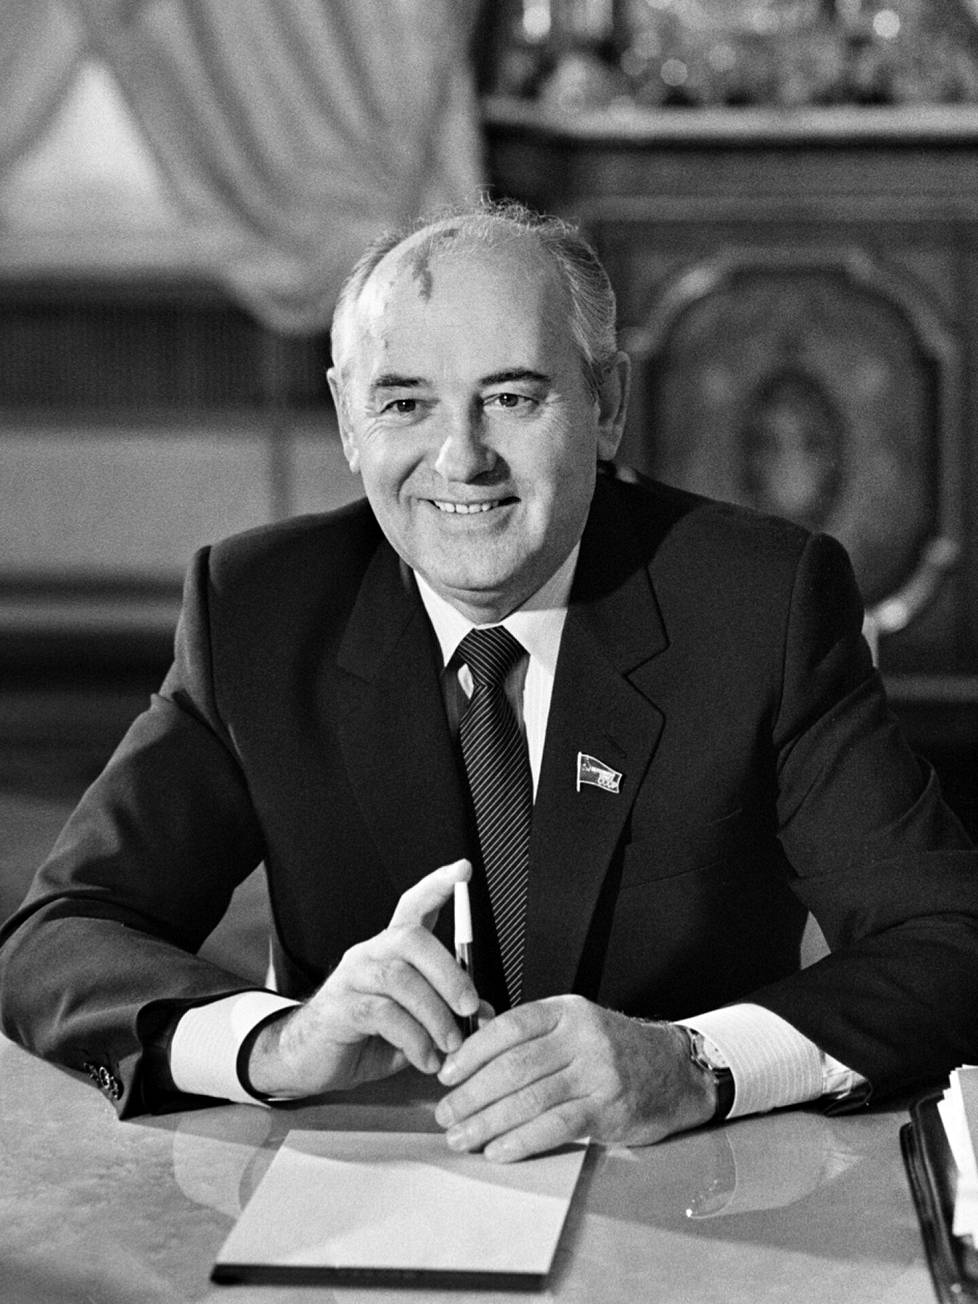 Mihail Gorbatsovia arvostettiin ja arvostetaan yhä lännessä. Venäjän valtiollisessa propagandassa häntä haukutaan nykyisin karkeasti. 